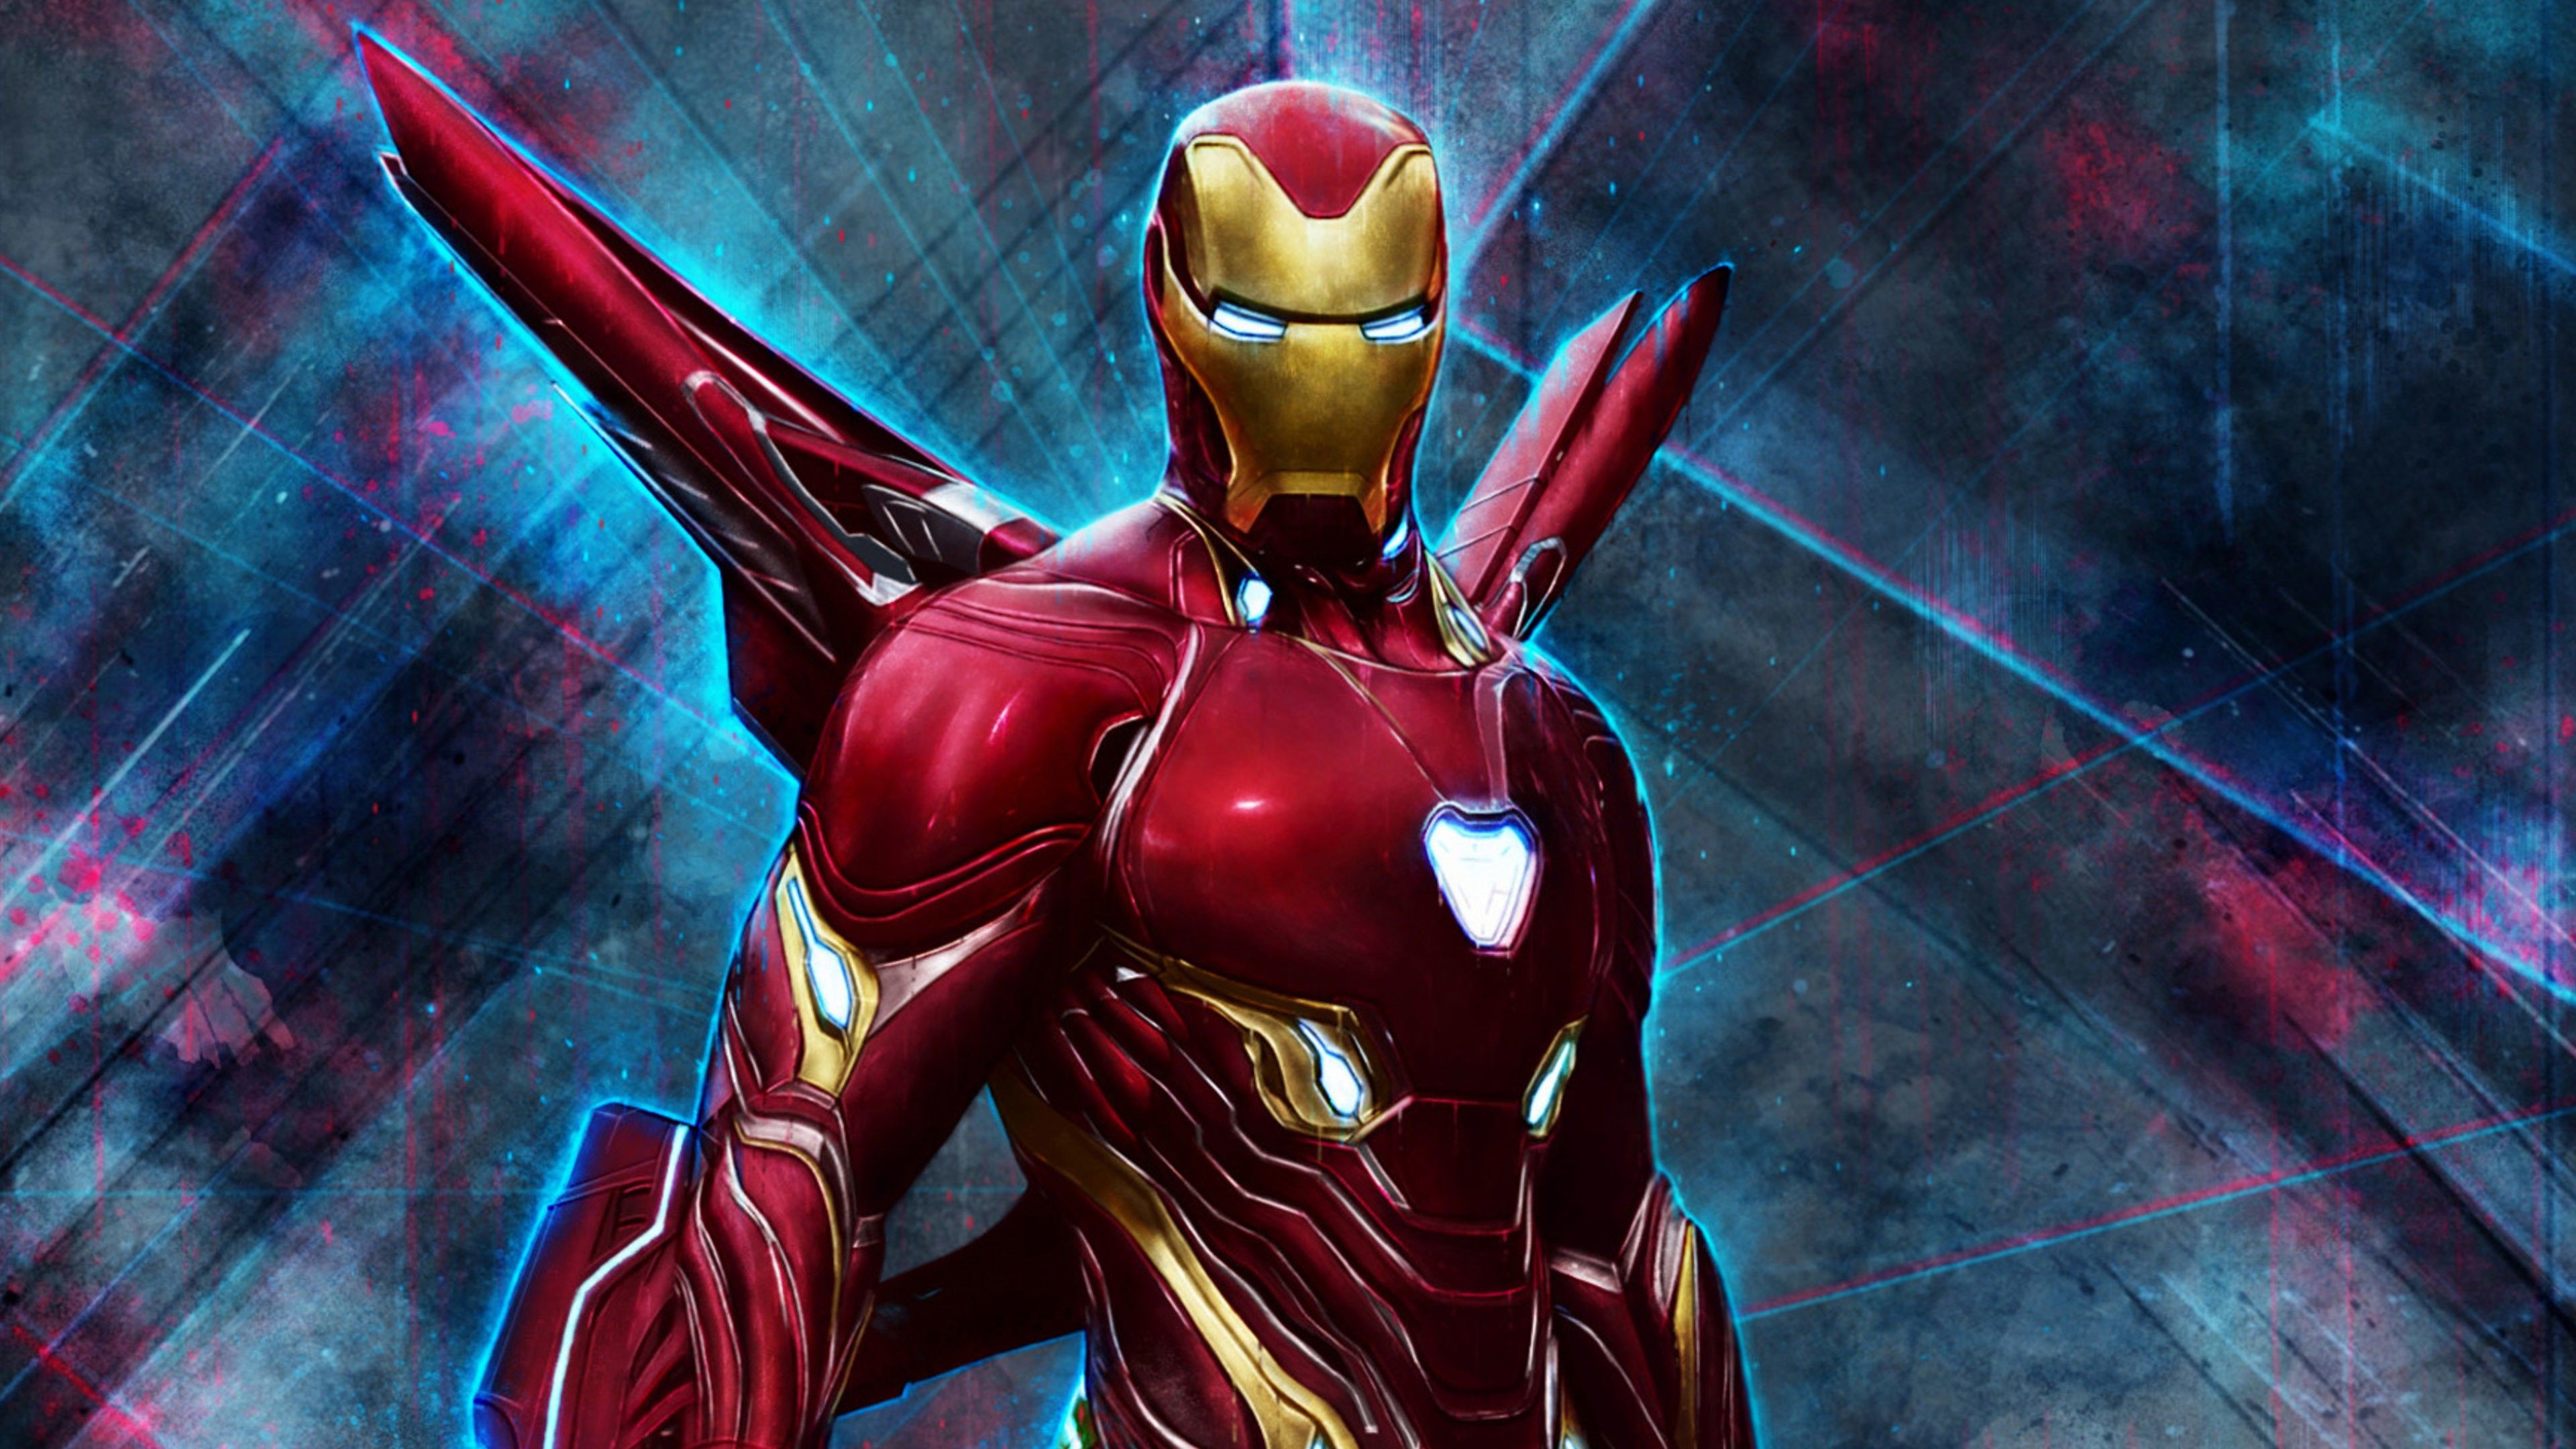 4k Pic Of Superhero Iron Man Man Endgame Suit